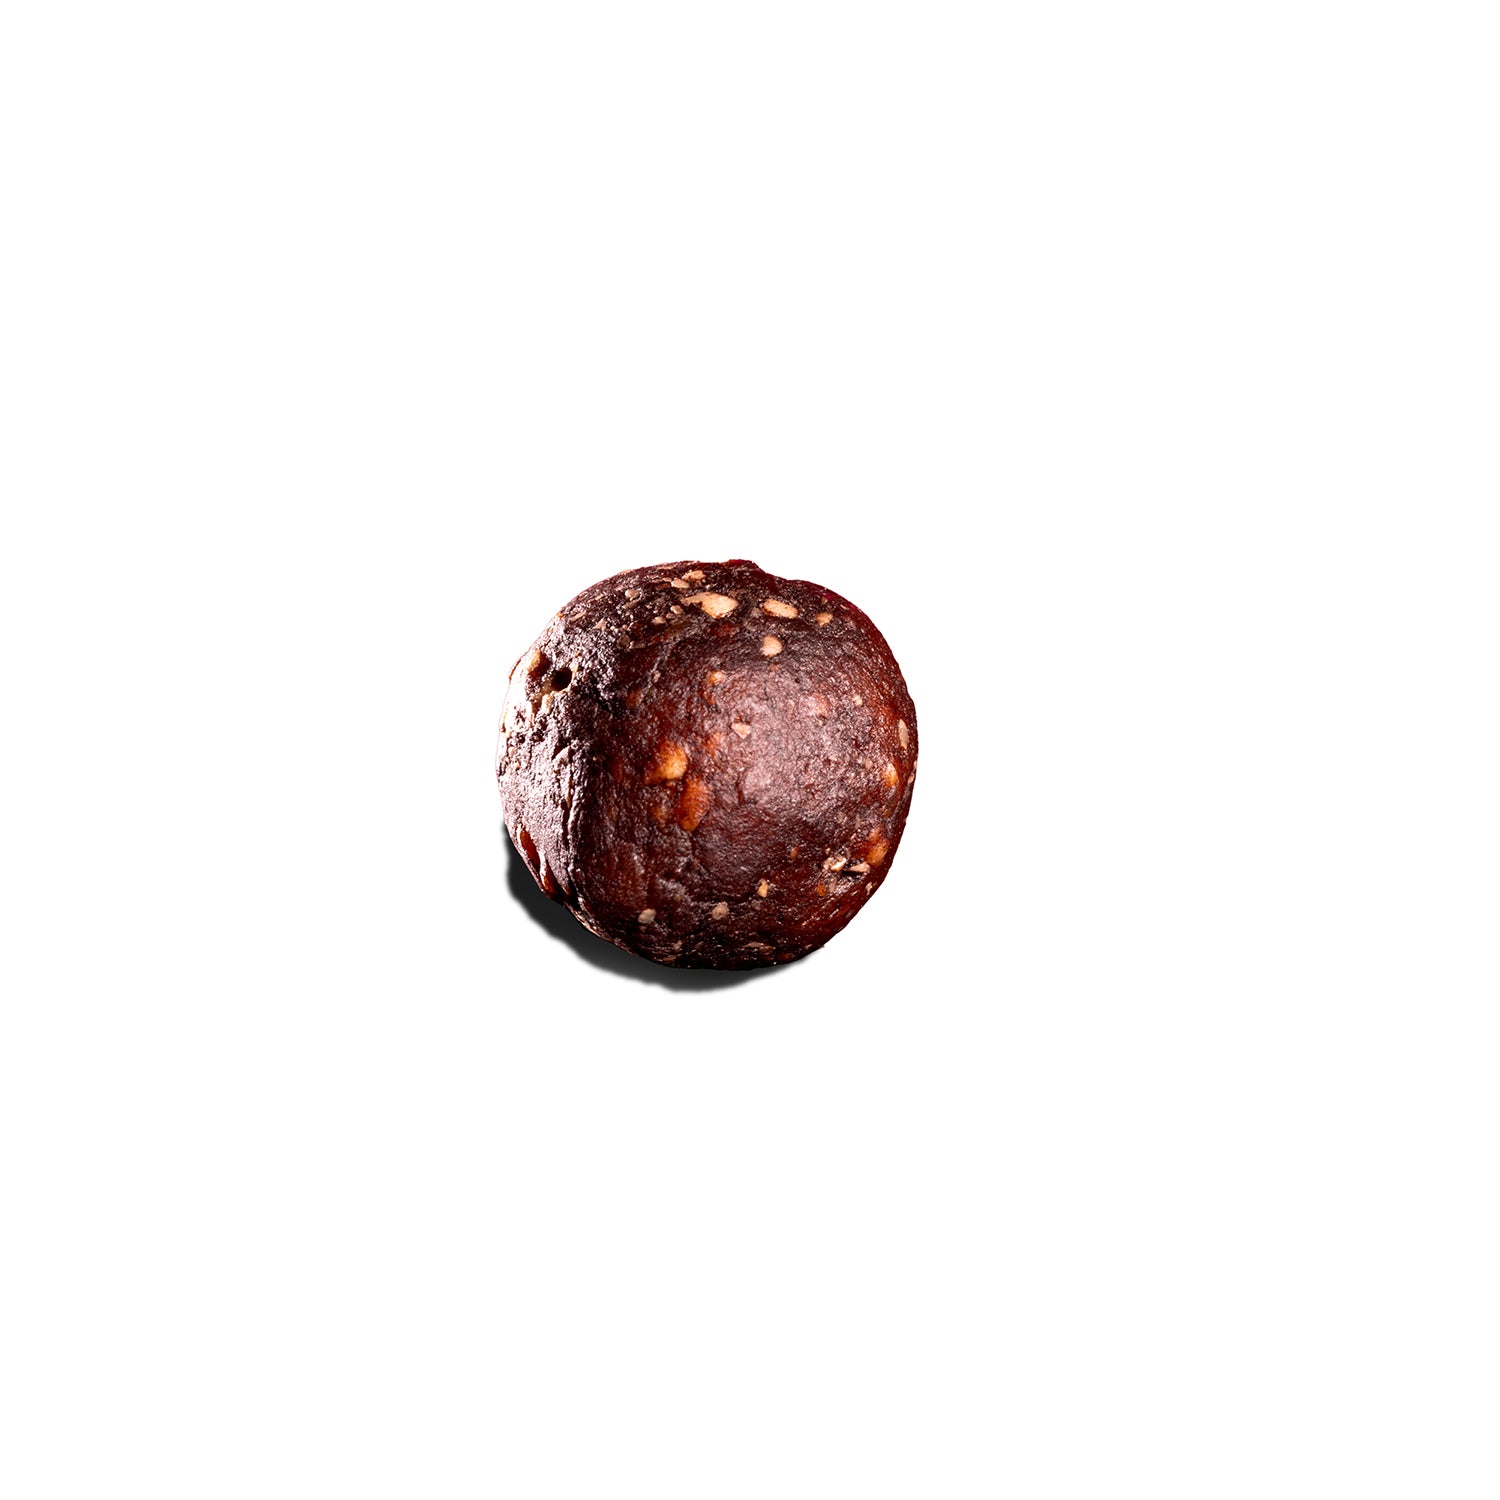 cravers cacao hazelnut balls product